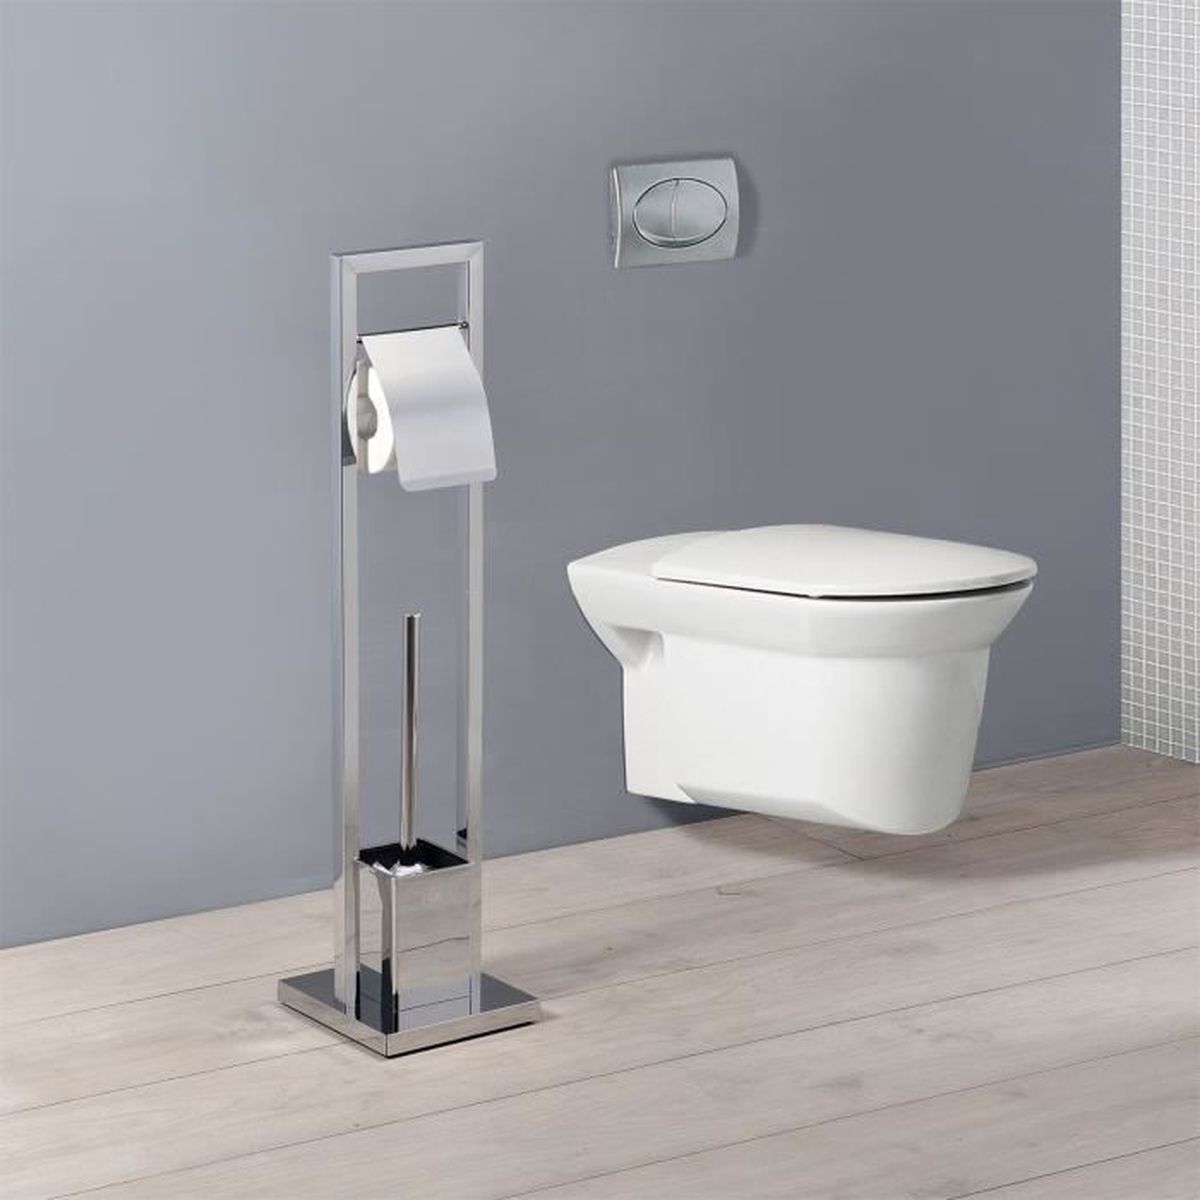 BZR02-W Meuble de Rangement Salle de Bain Meuble WC pour Papier Toilette  Porte Brosse WC SOBUY BZR02-W Pas Cher 